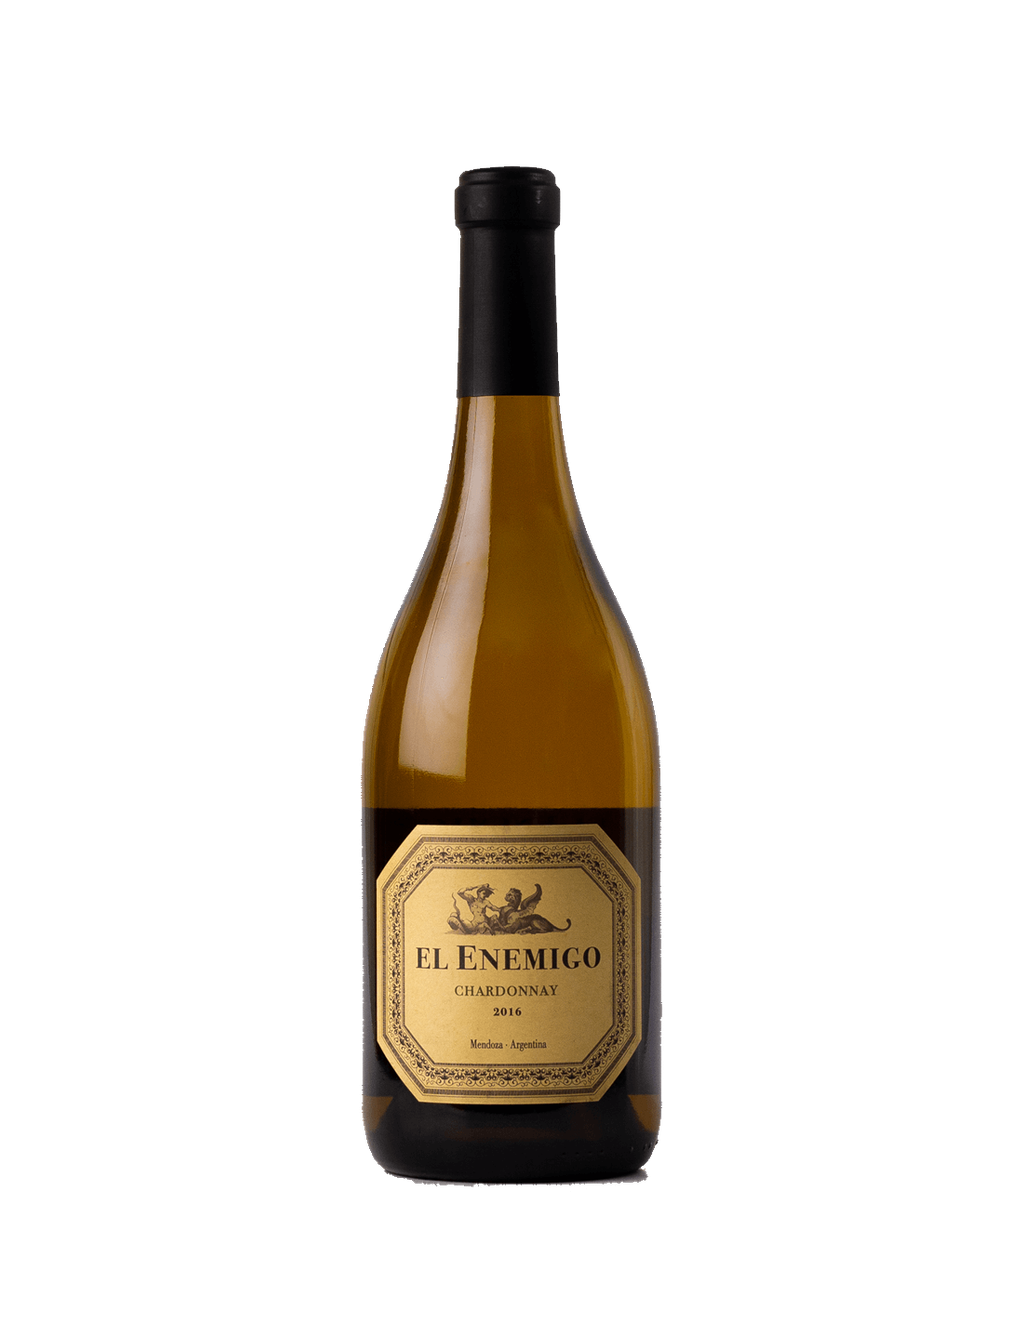 El Enemigo Chardonnay 2020 fue el mejor de Argentina en el Top 100 Value Wines de James Suckling. - Gentileza